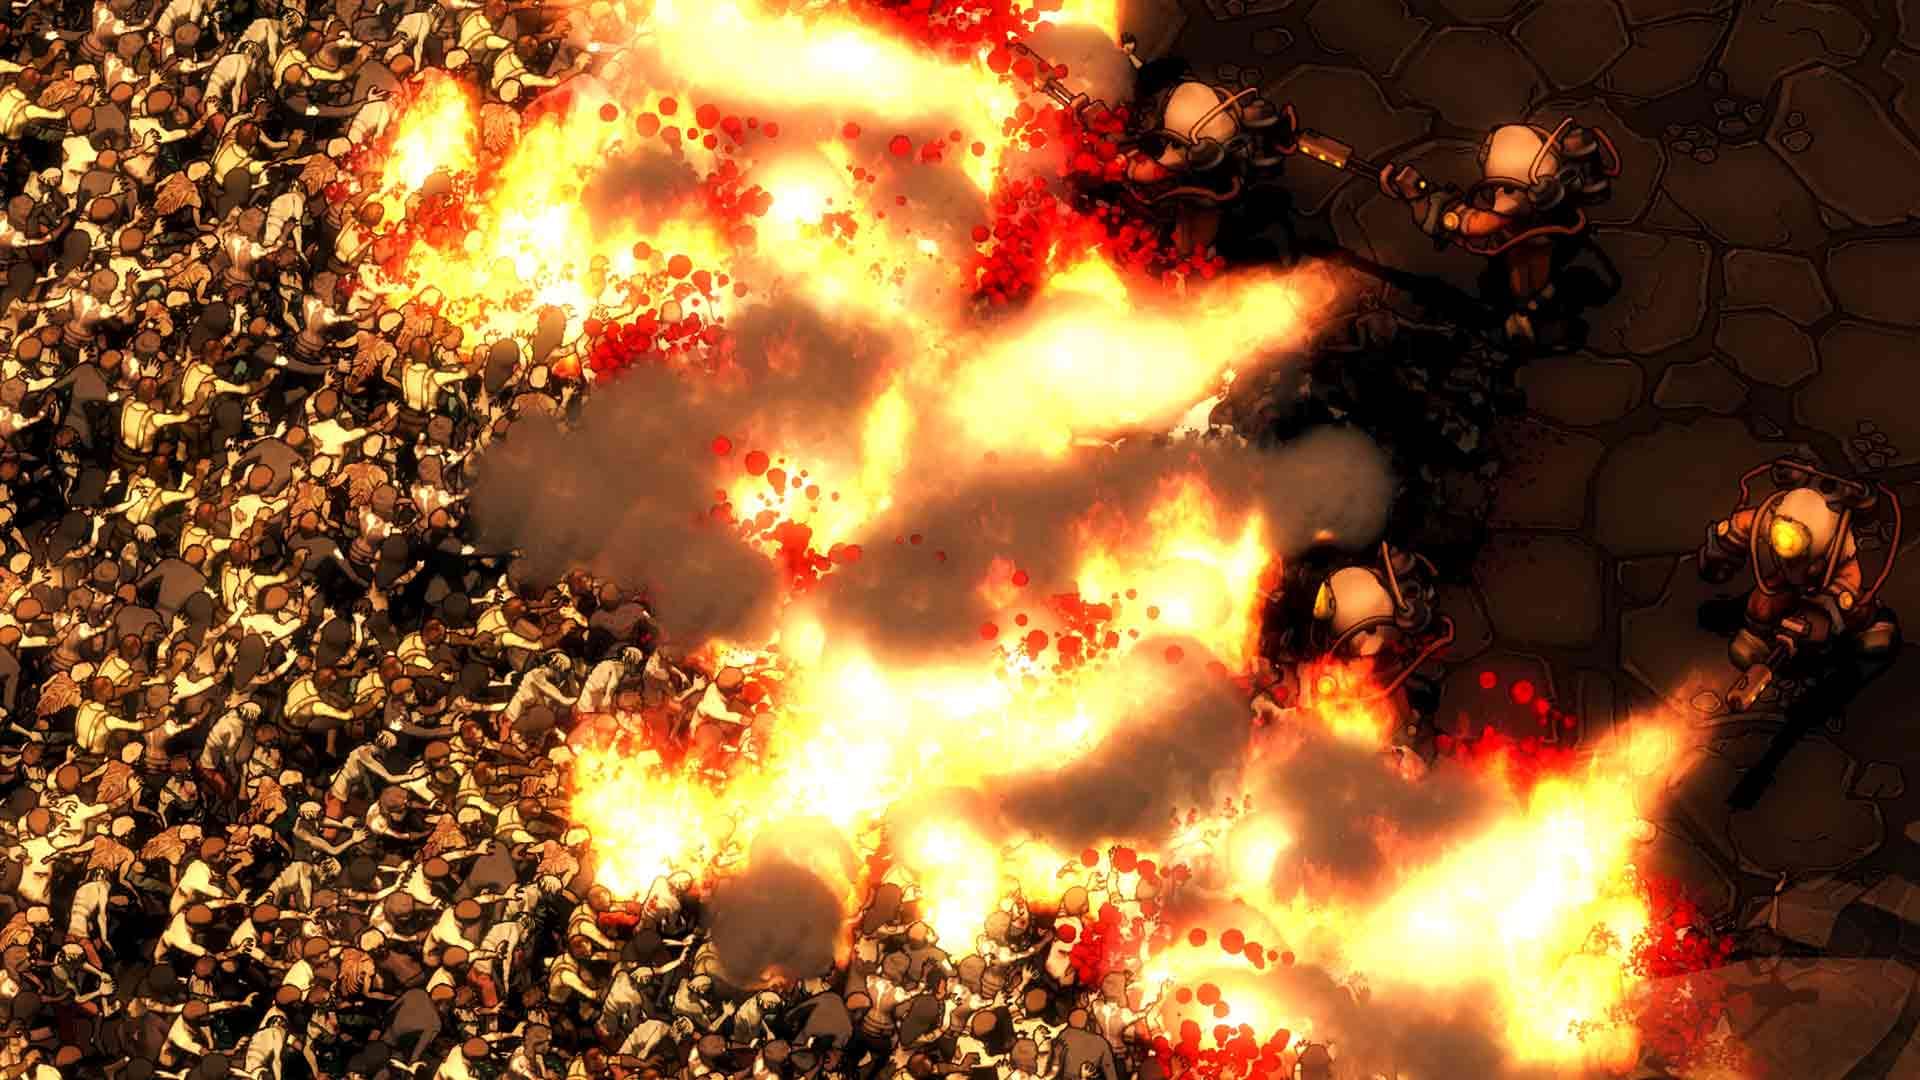 Flammenwerfer frei: In "They are Billions" ist man im Kampf gegen die Zombies nicht gerade zimperlich.